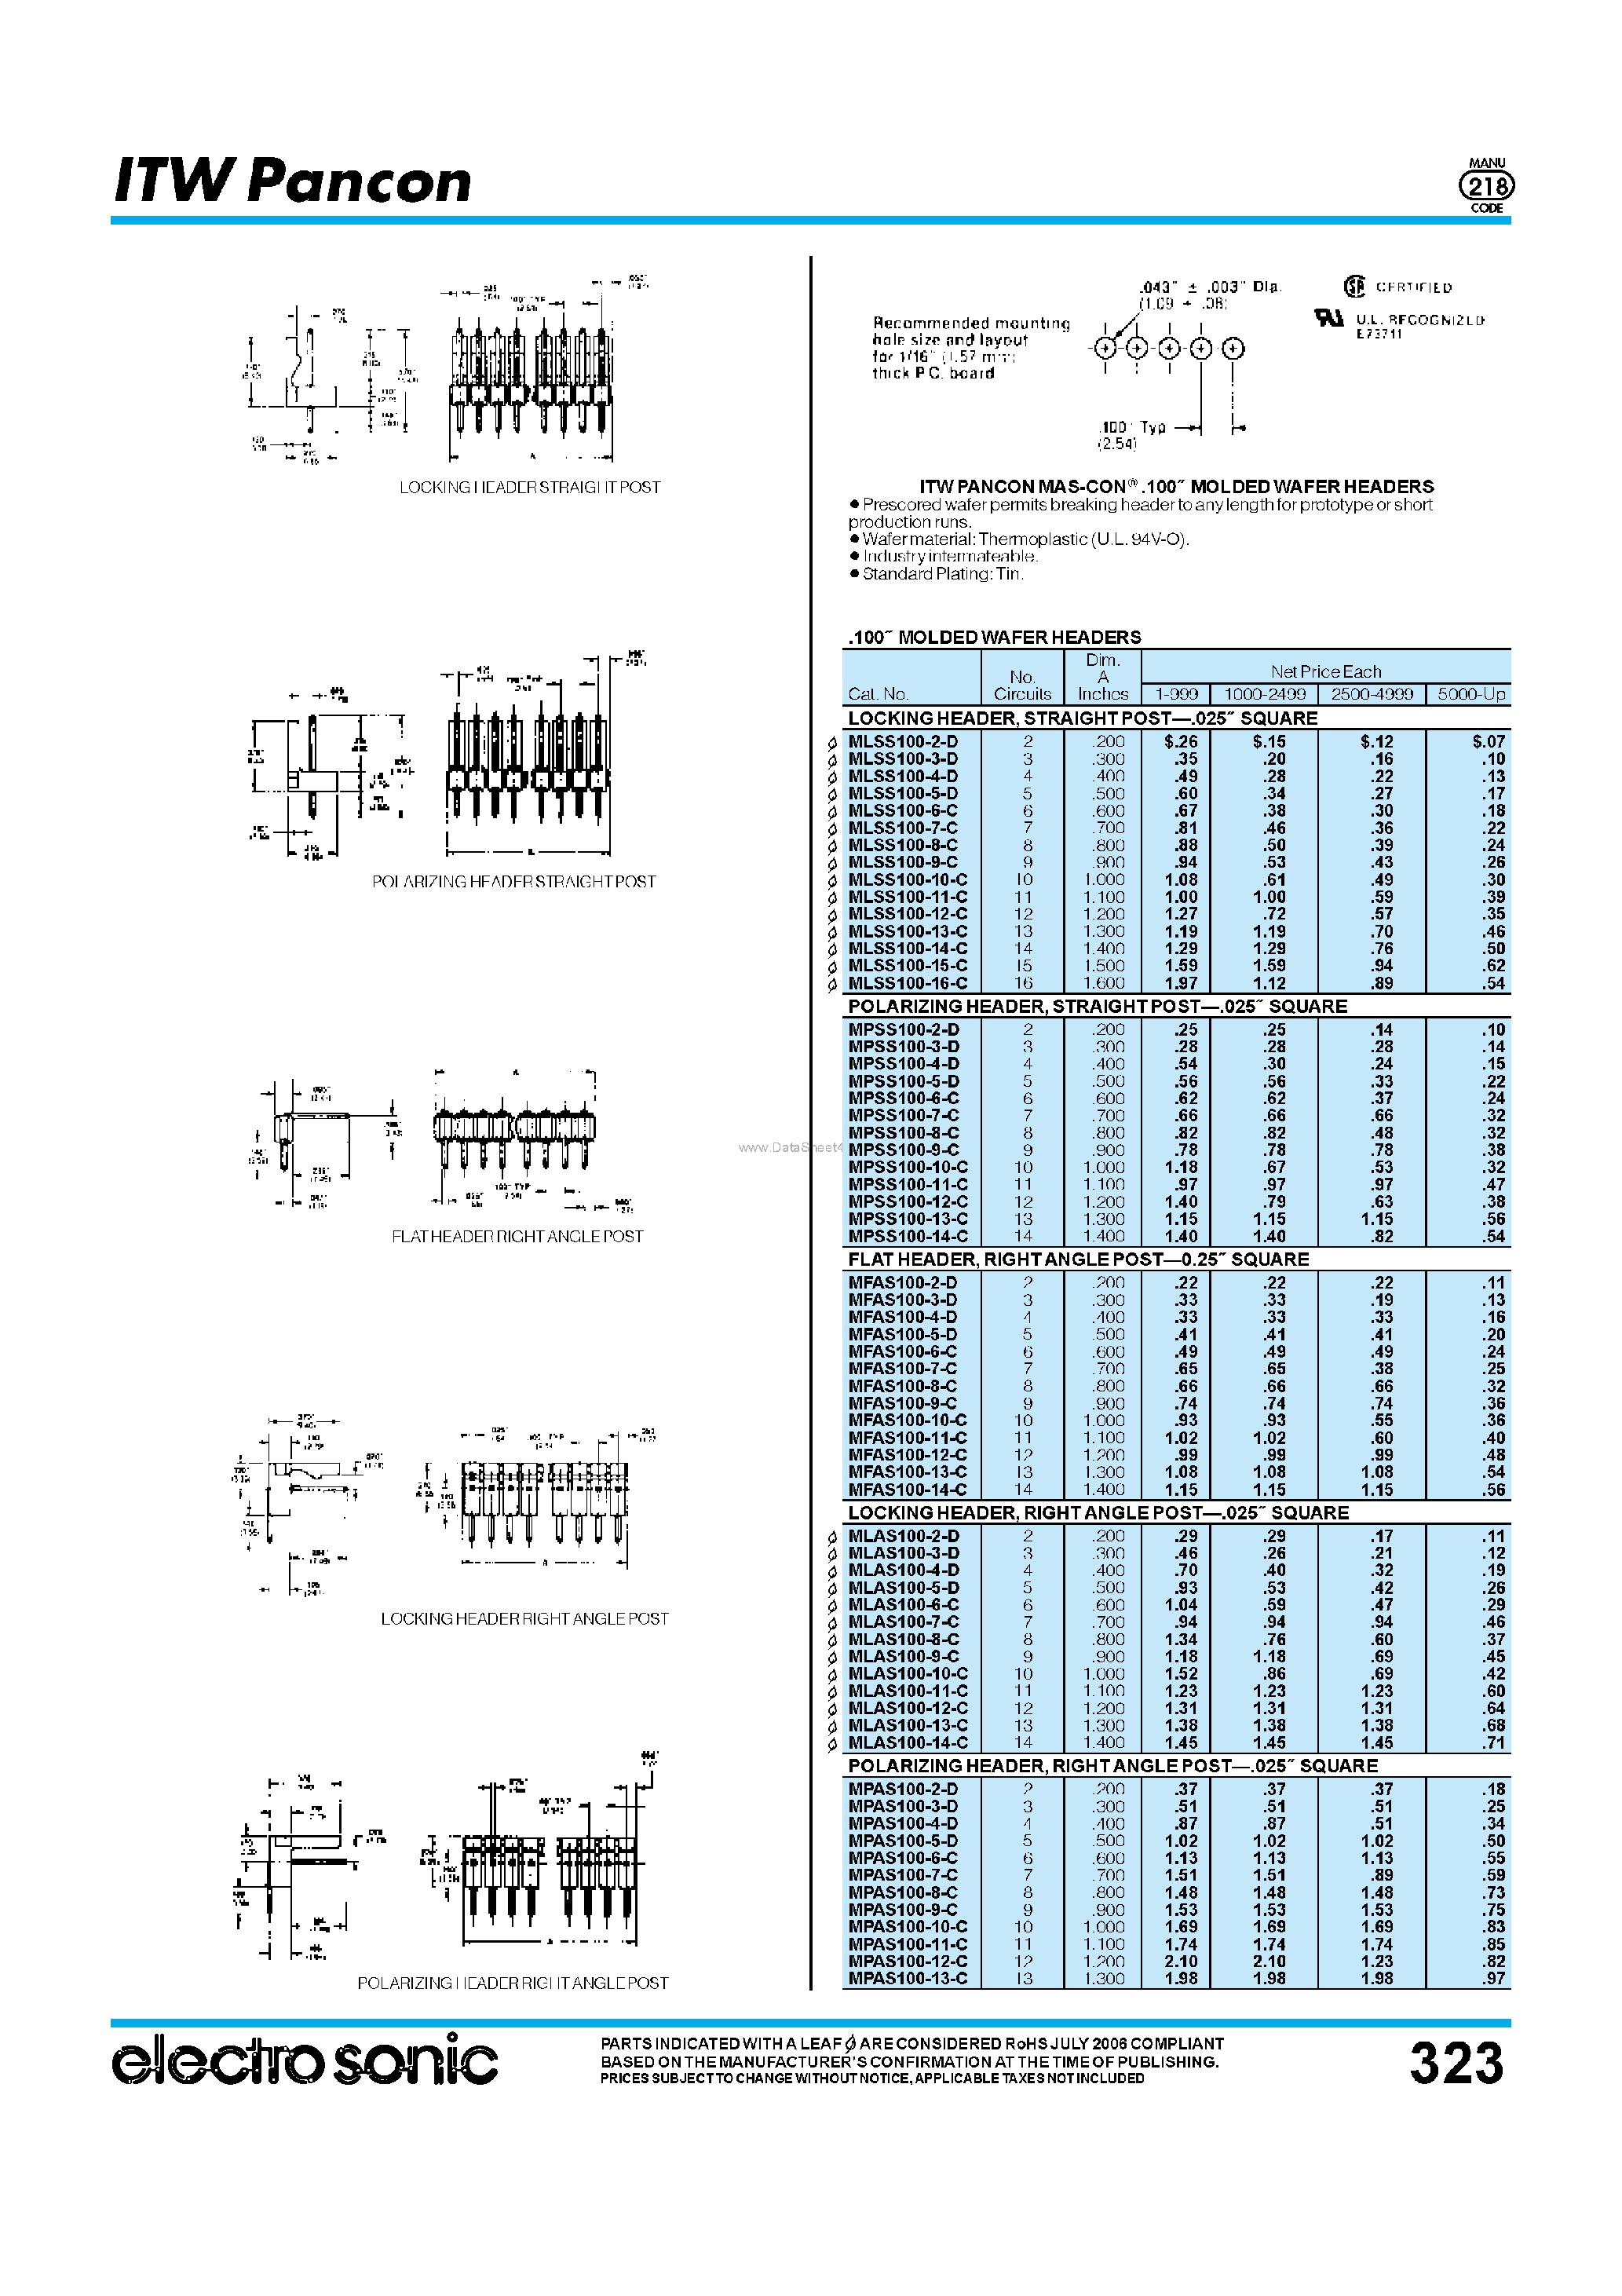 Datasheet MLSS100-7-C - (MLSS100-xx-C) Header / Straight Post page 1